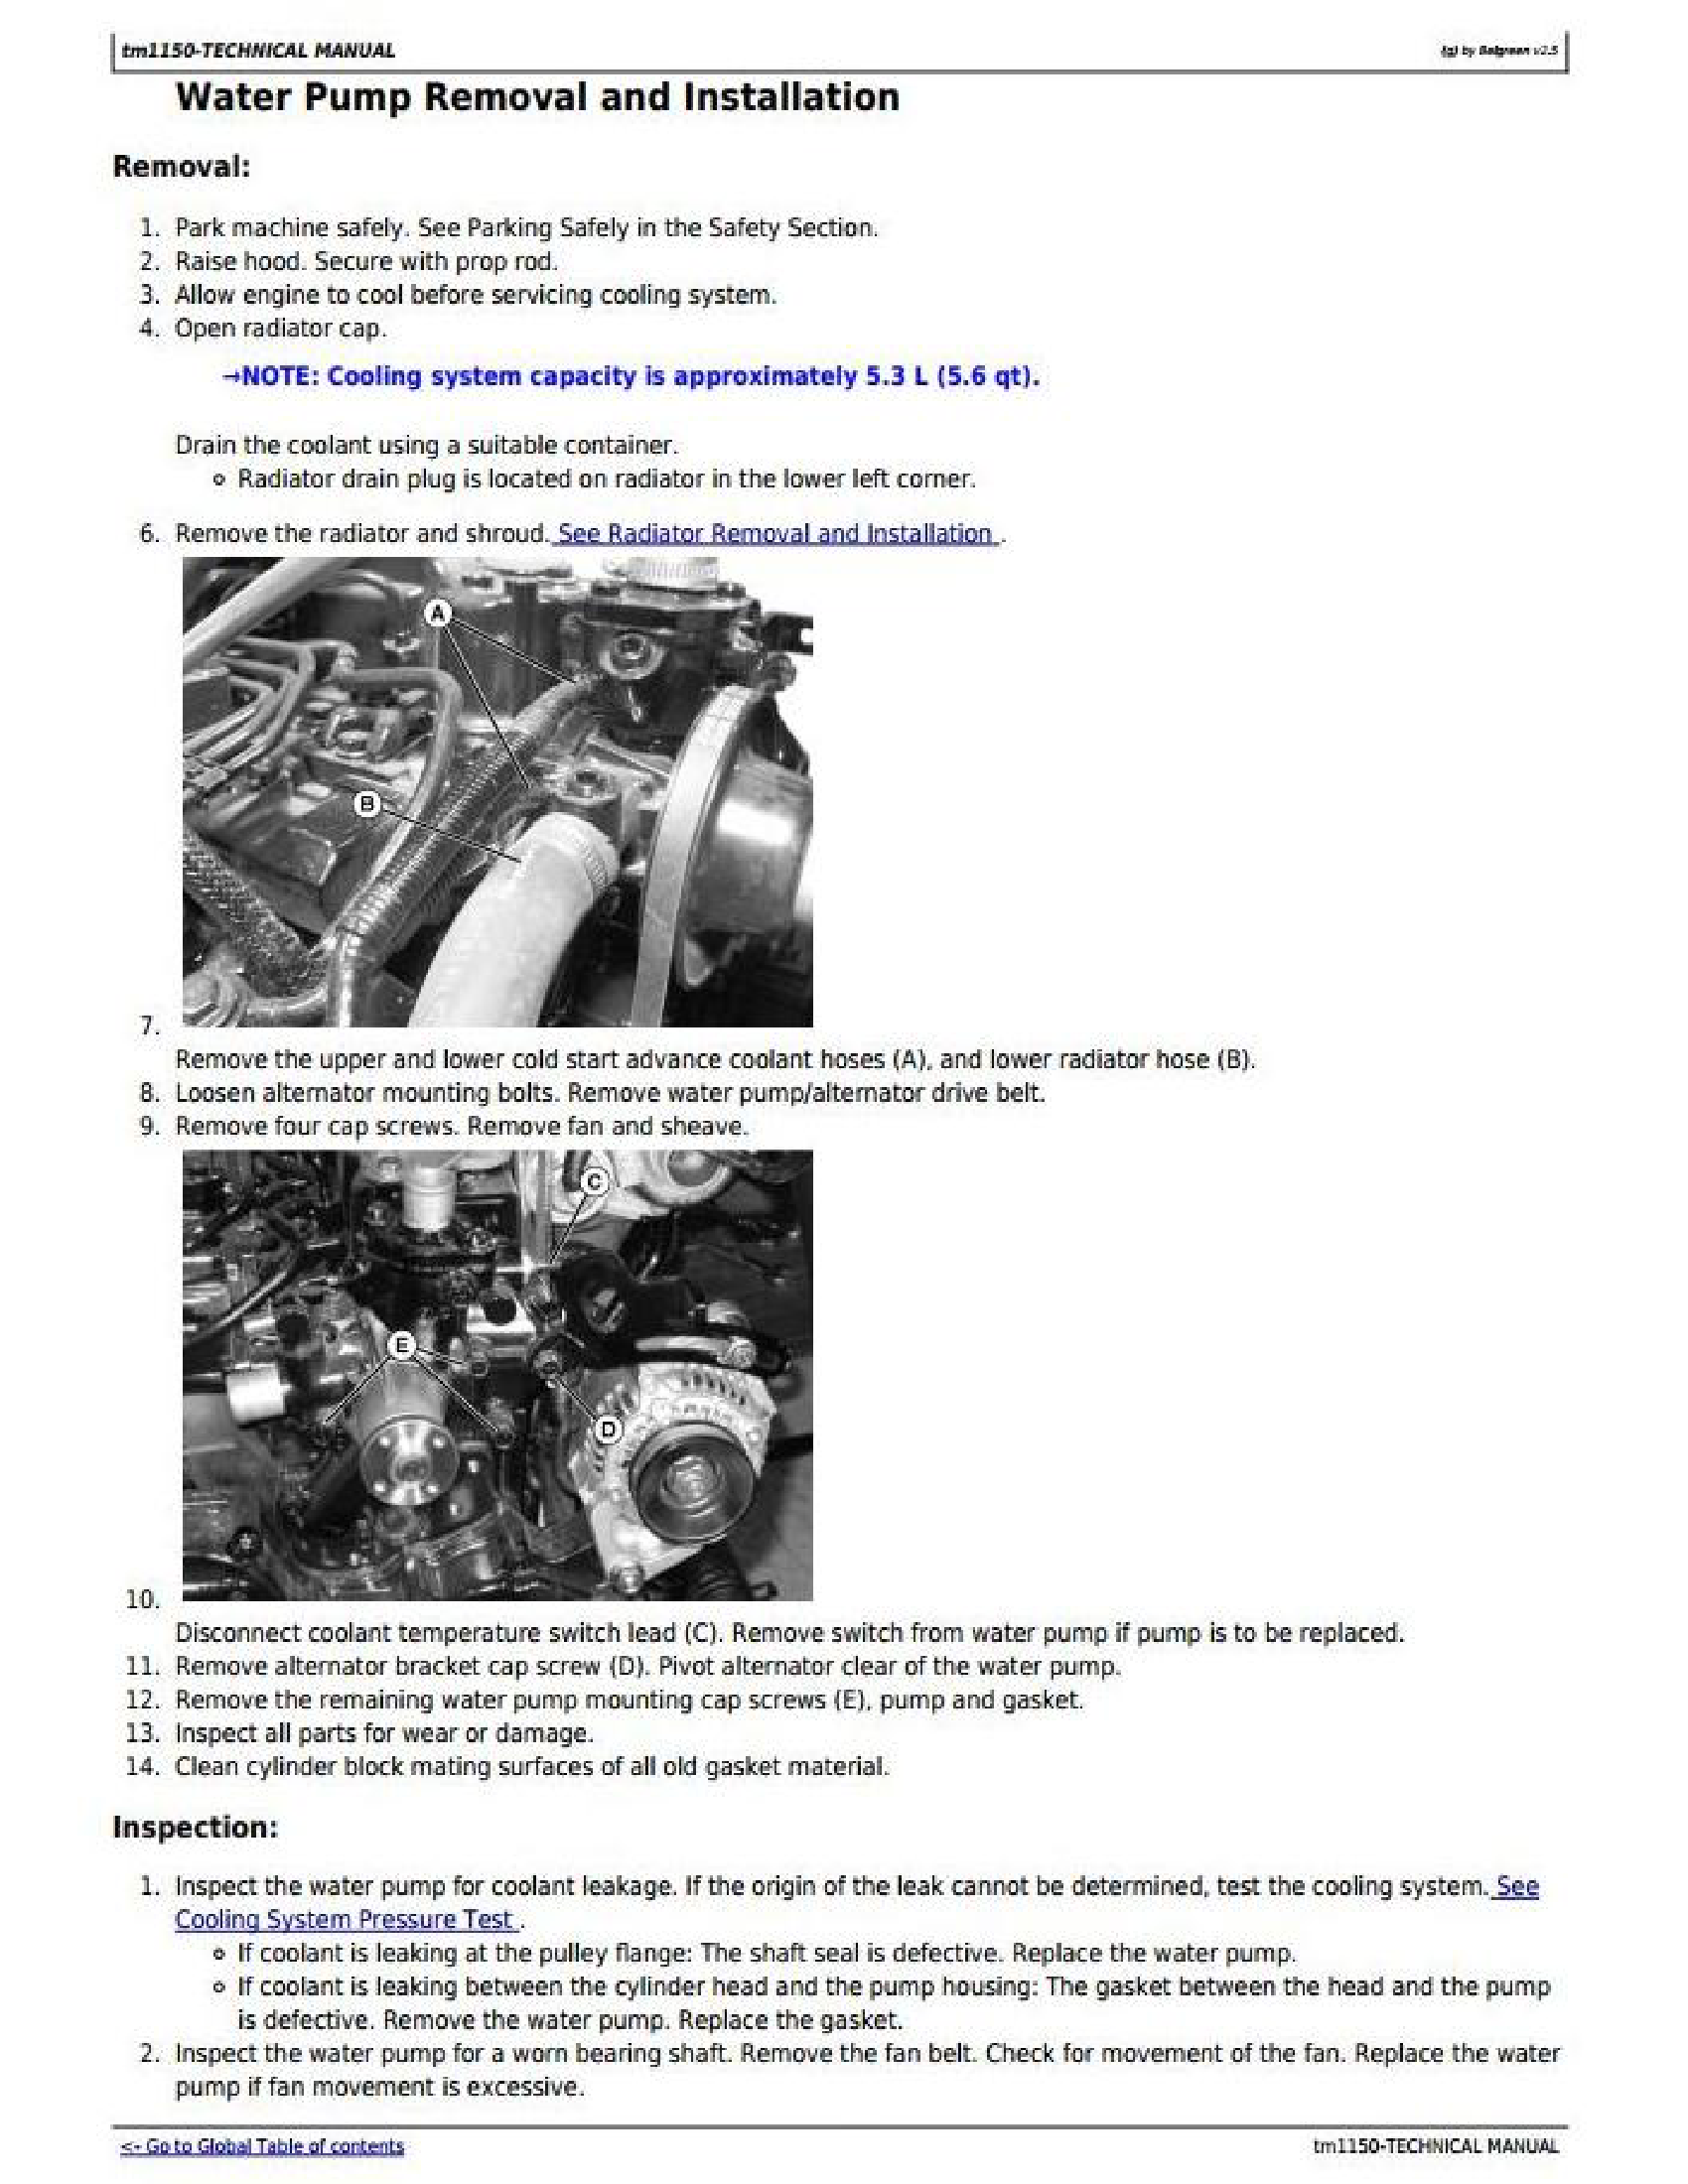 John Deere 1F9130GX manual pdf